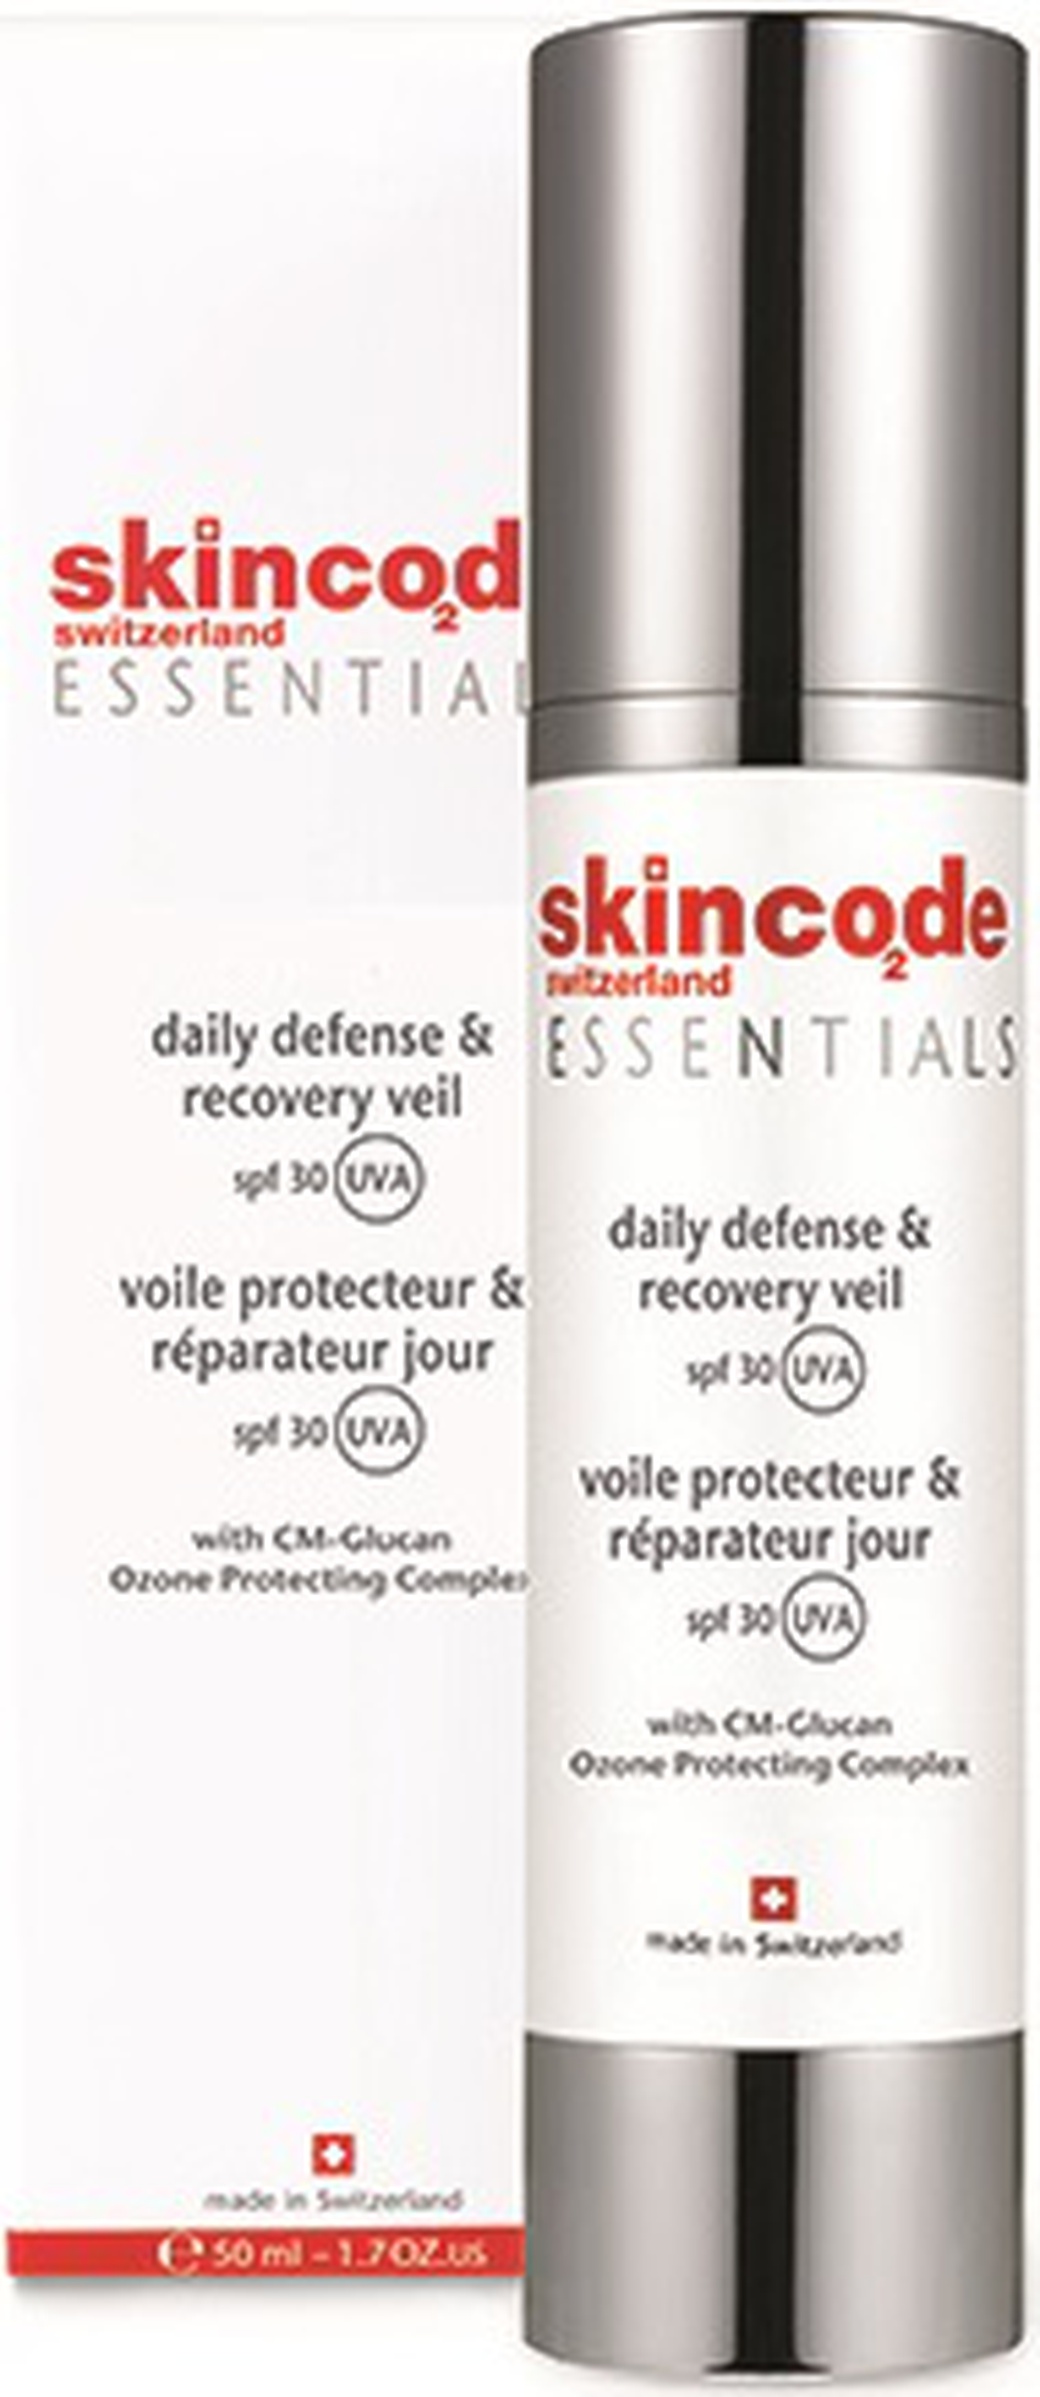 SkinCode Essentials дневной защитный и восстанавливающий крем spf 30, 50 мл фото